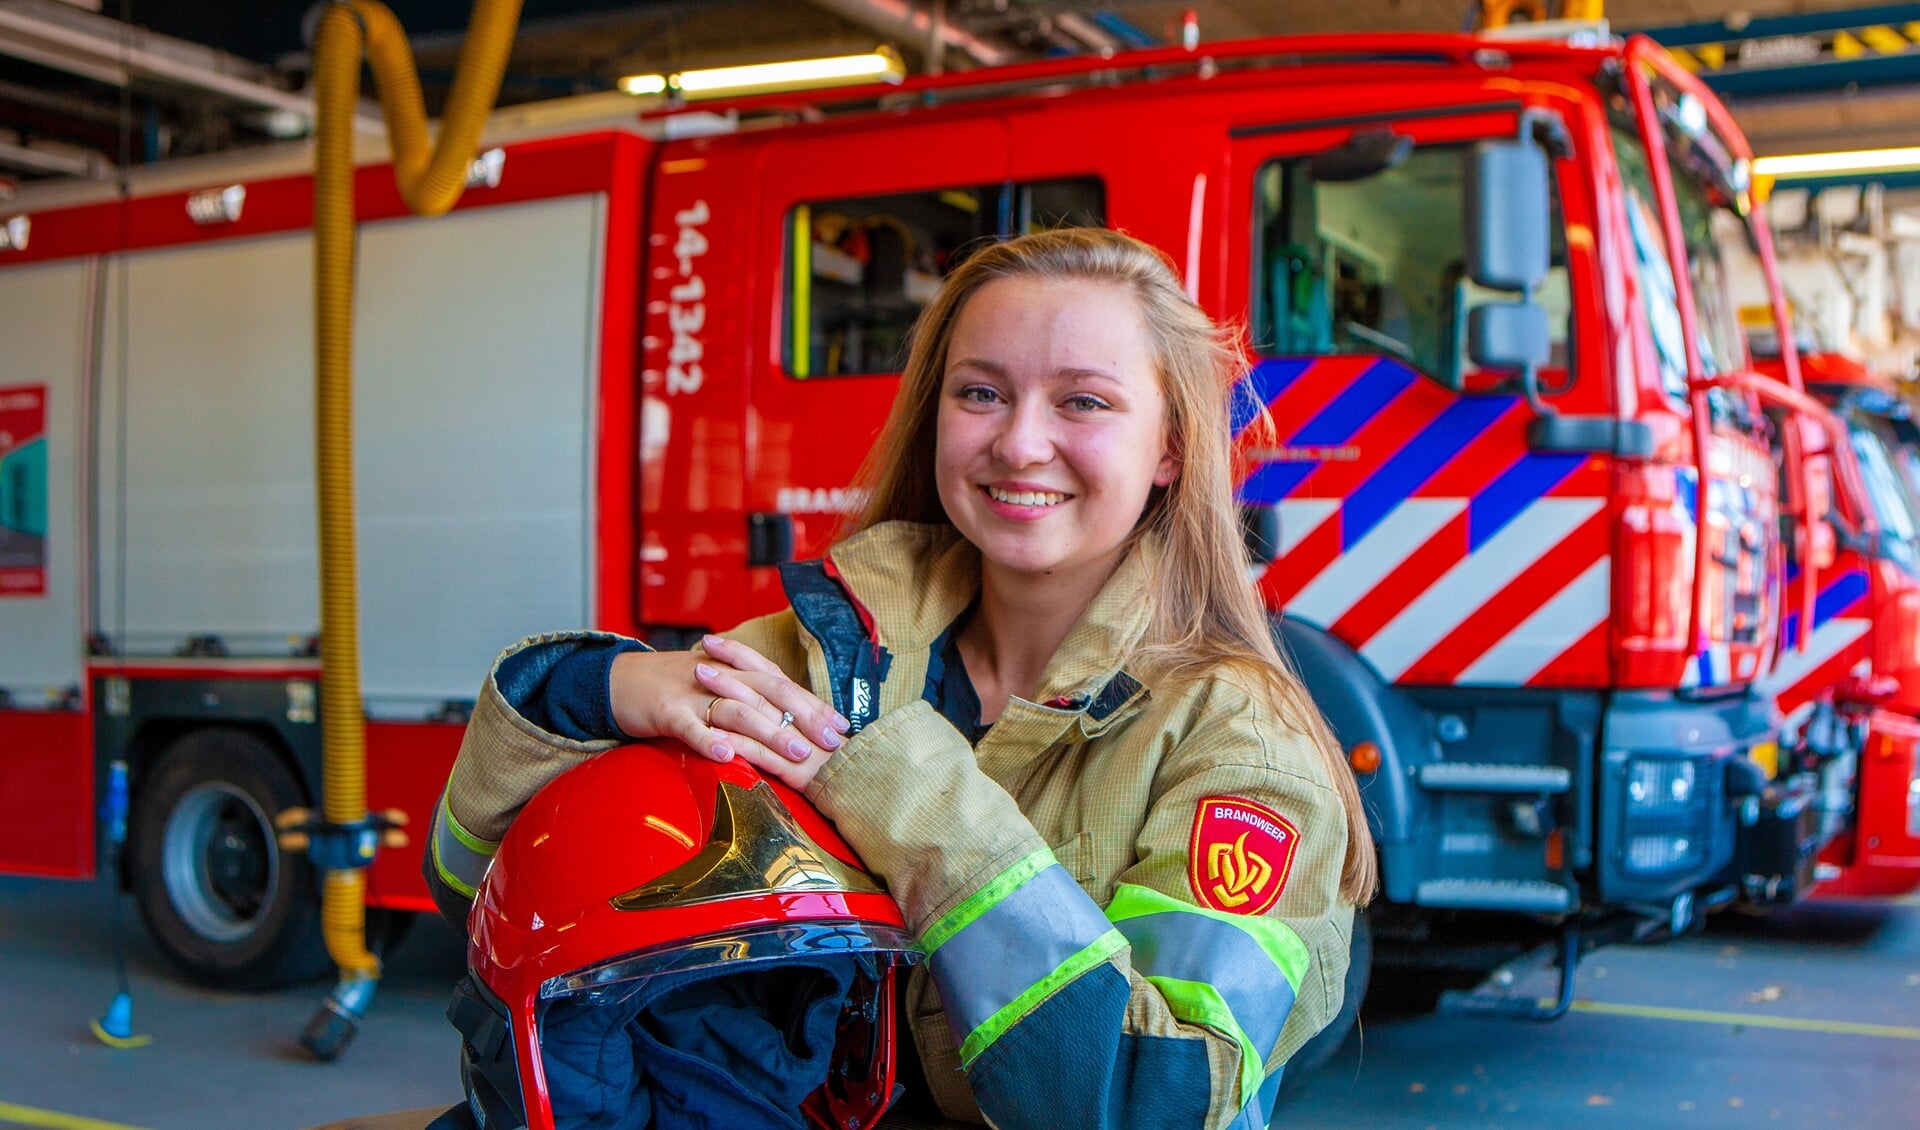 Romy is als aspirant nu in opleiding voor manschap bij de vrijwillige brandweer.